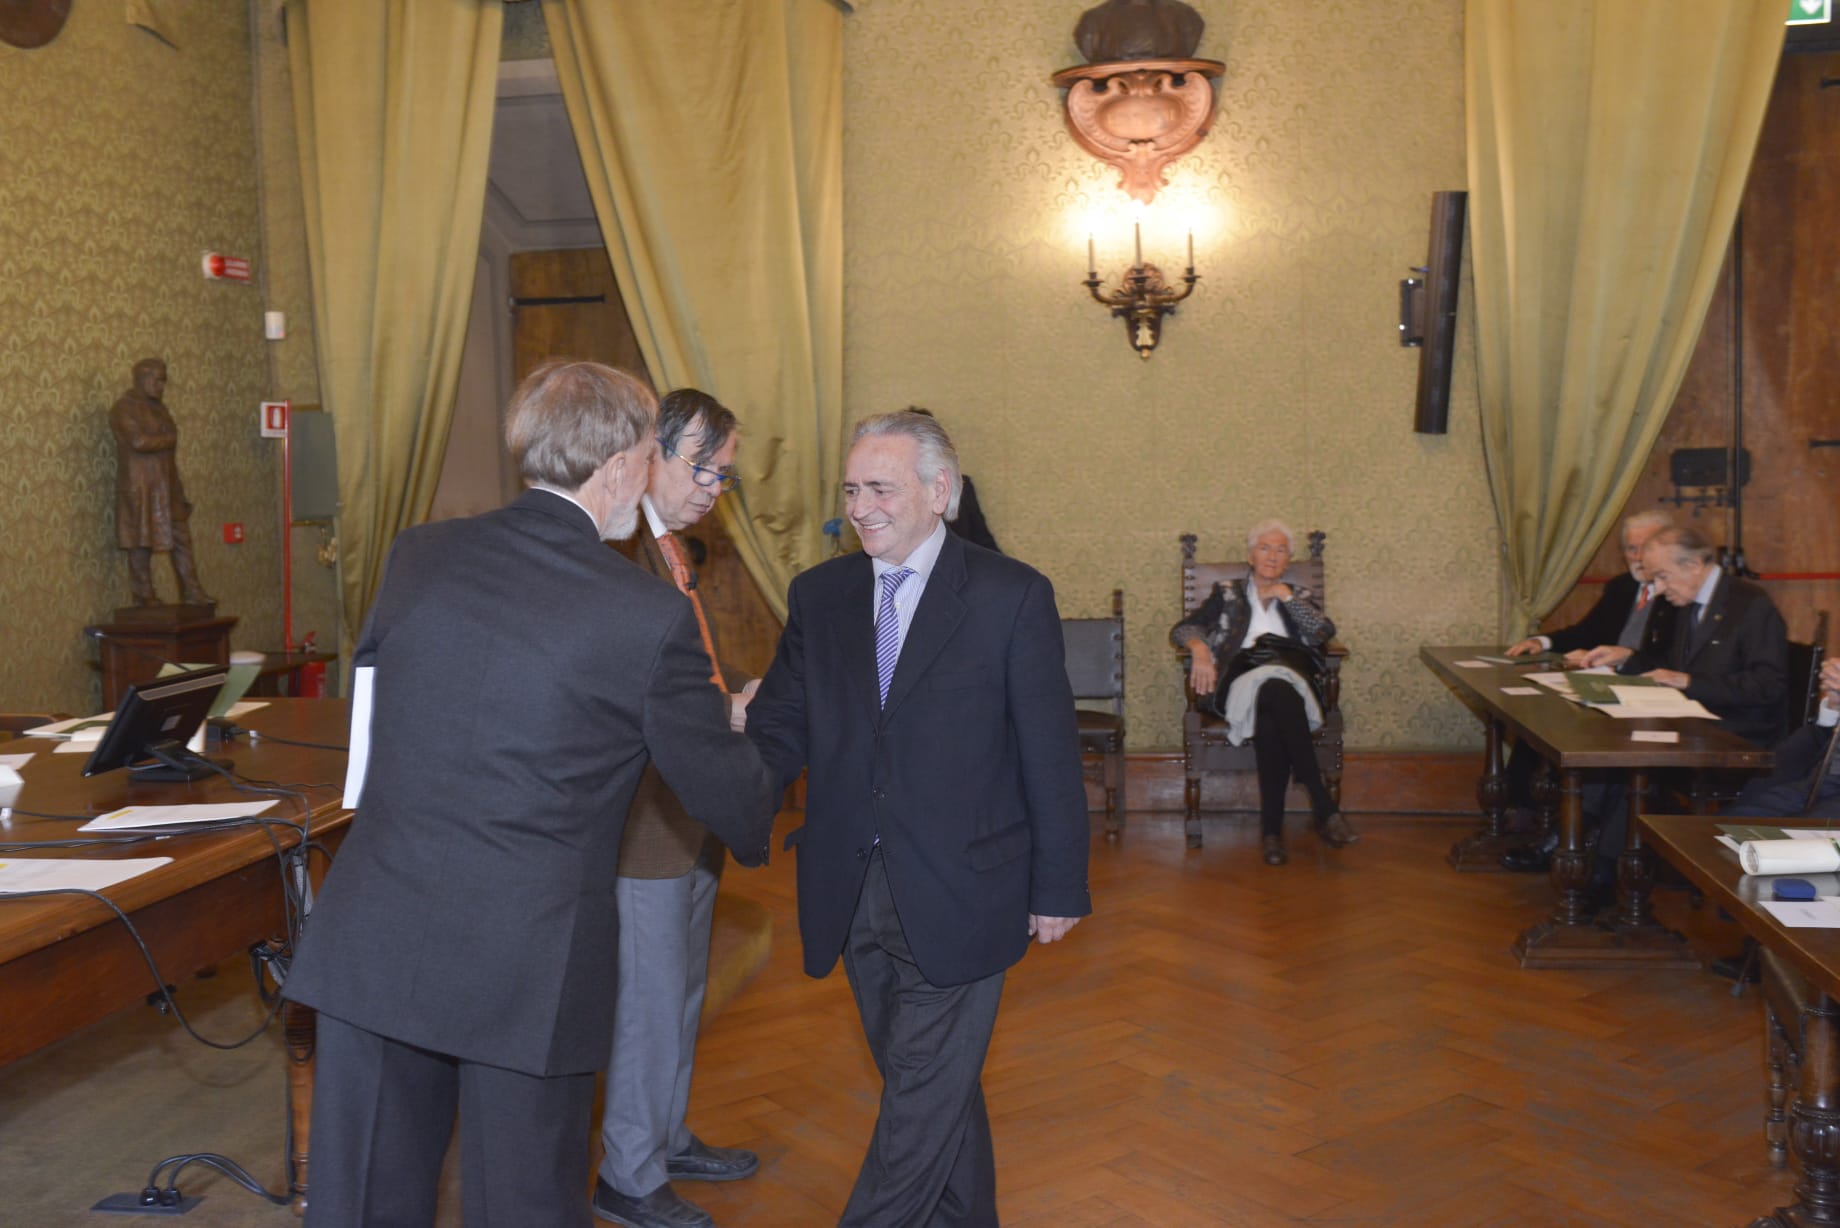 Antonio Pioletti premiato “per i suoi studi nel campo della filologia e della linguistica”